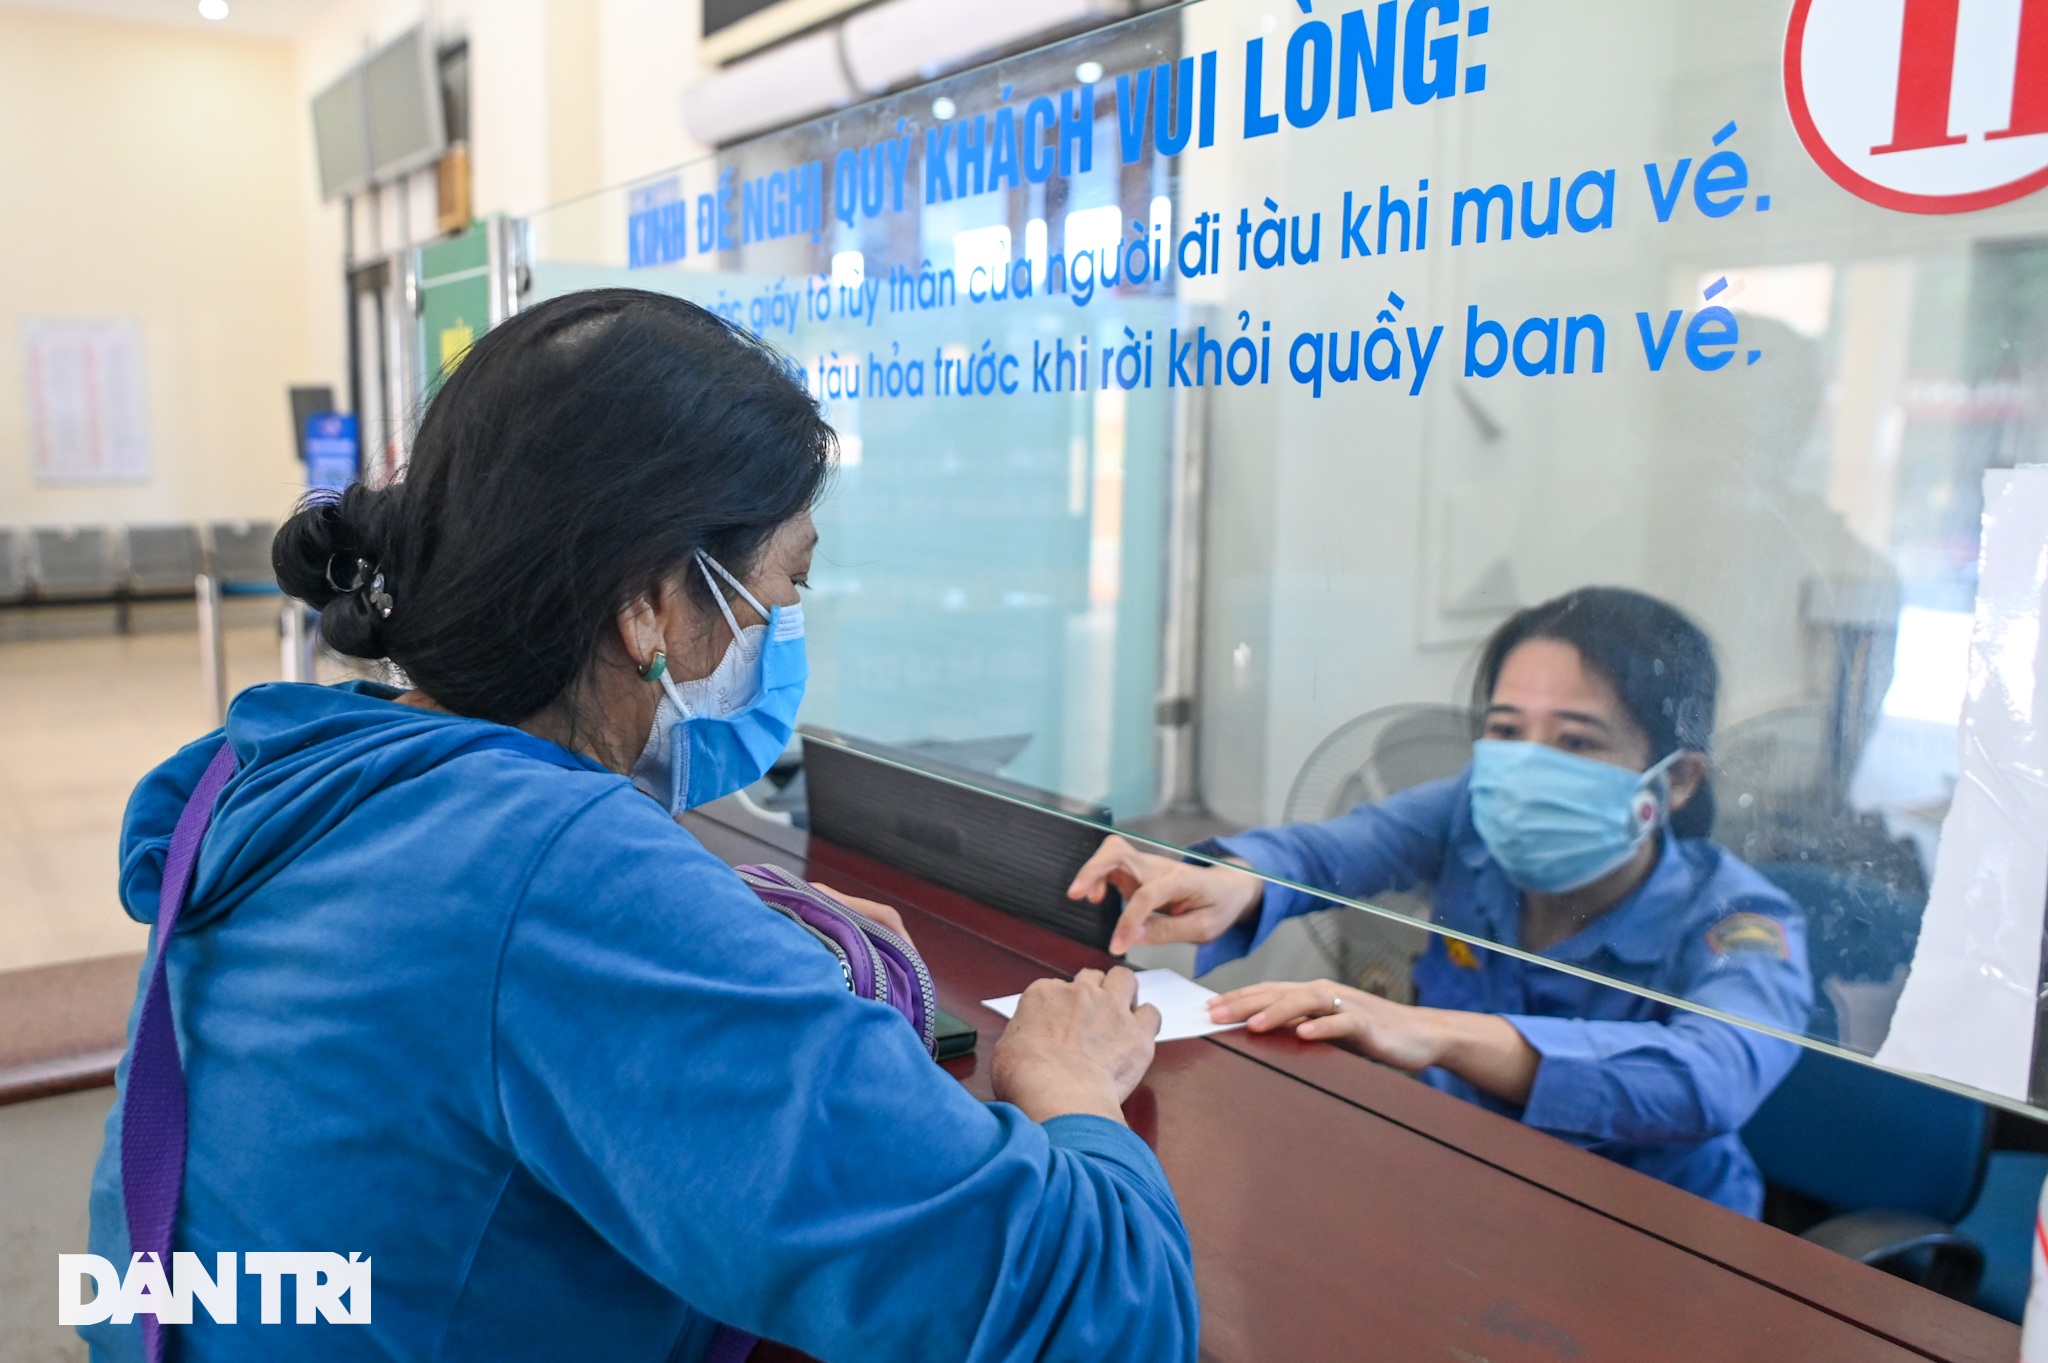 Ga Hà Nội: Hành khách phấn khởi mua vé chuyến tàu sau giãn cách đi TPHCM - 13